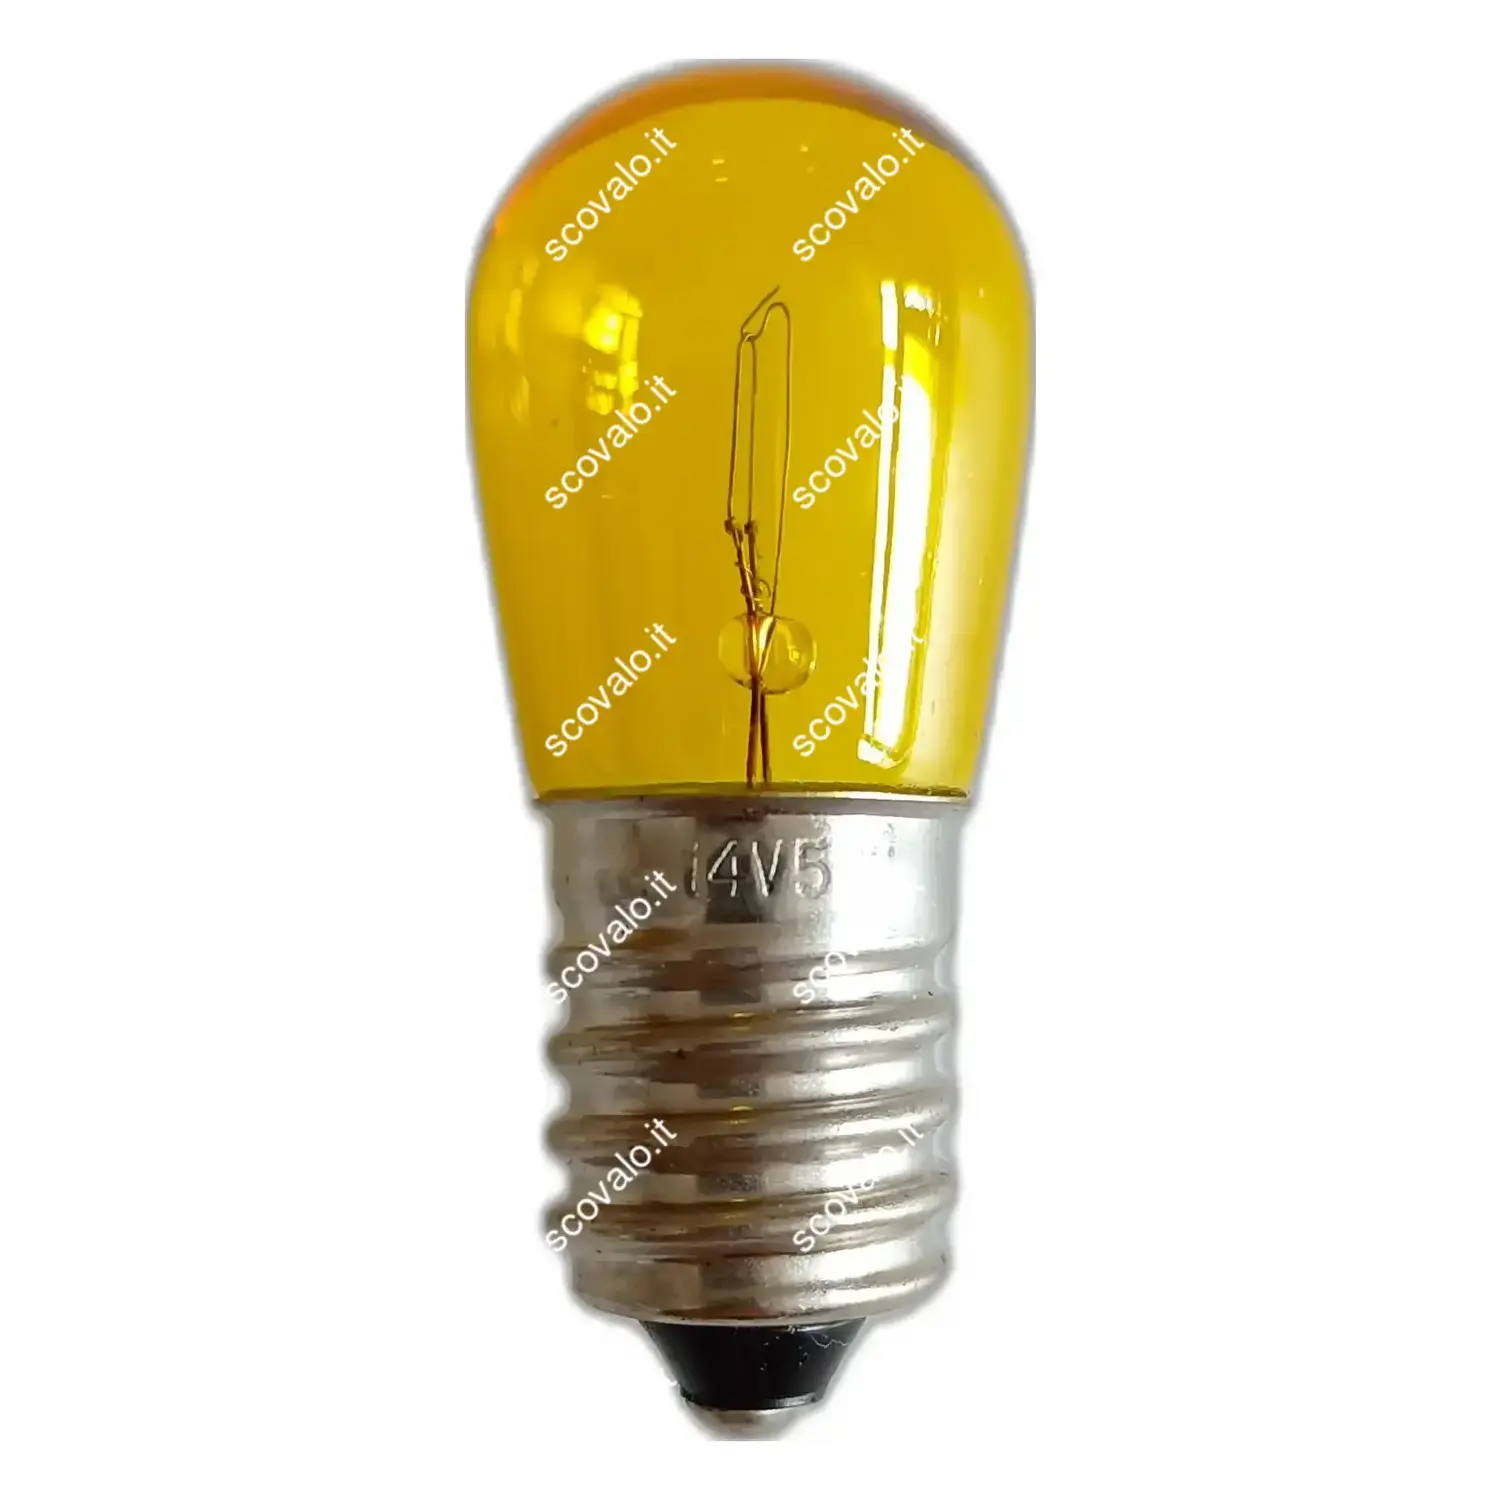 immagine del prodotto lampadina incandescenza luminarie di natale festone 14v e14 giallo